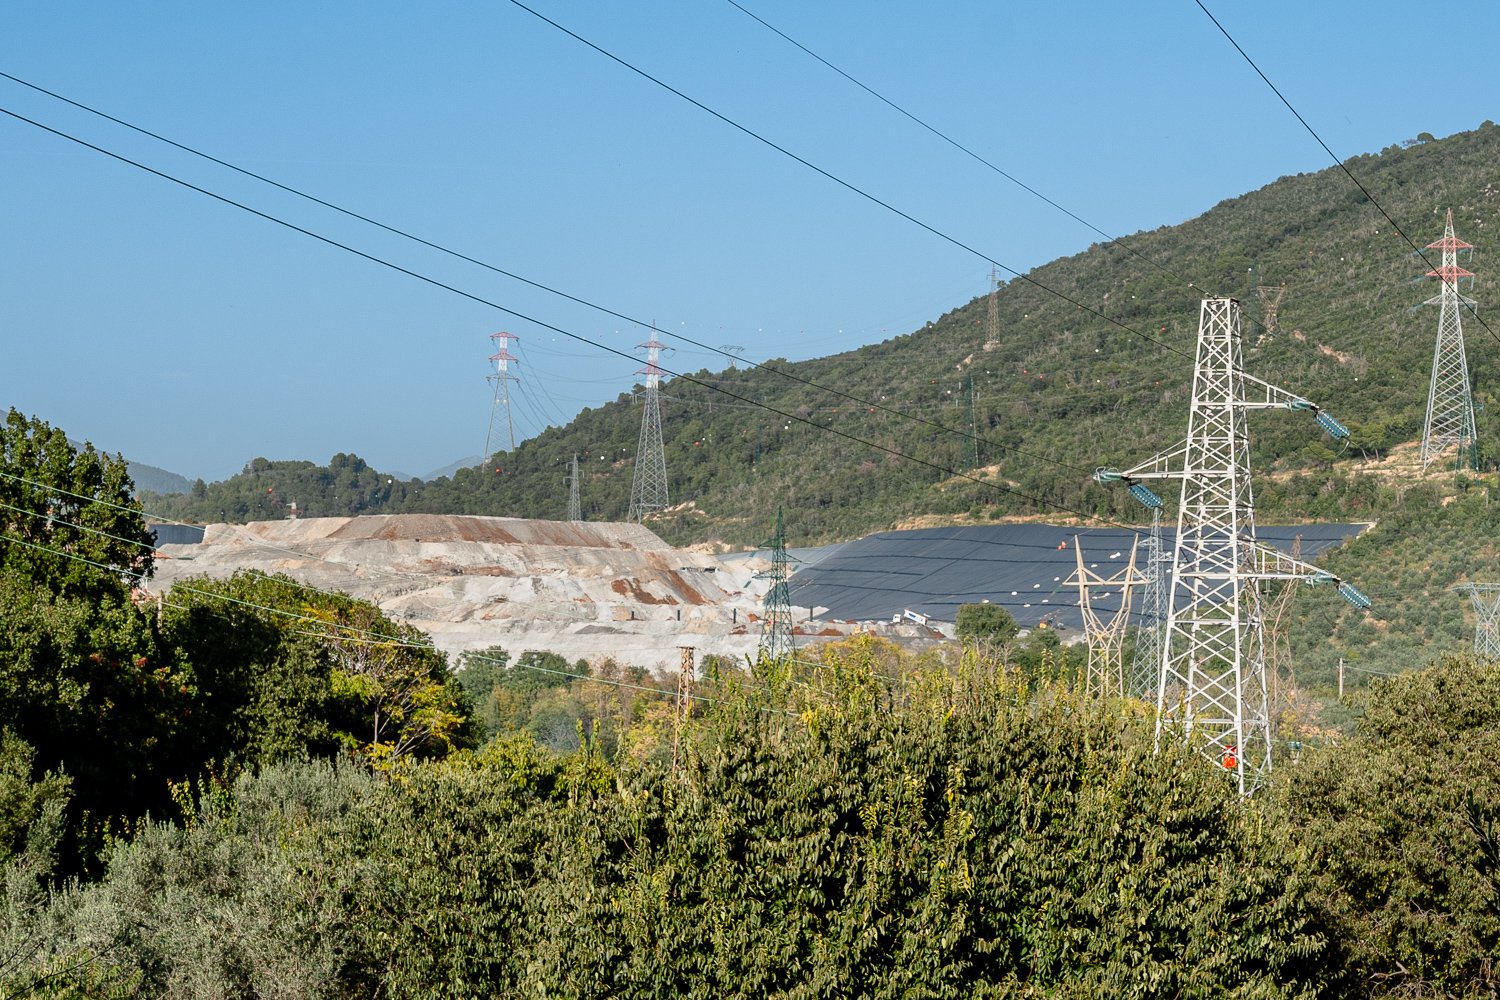  Vista sulla discarica di rifiuti speciali di tipo di B di Terni a Villa Valle ed il suo ampliamento visibile dal borgo di Papigno.Papigno (Terni), 2022 